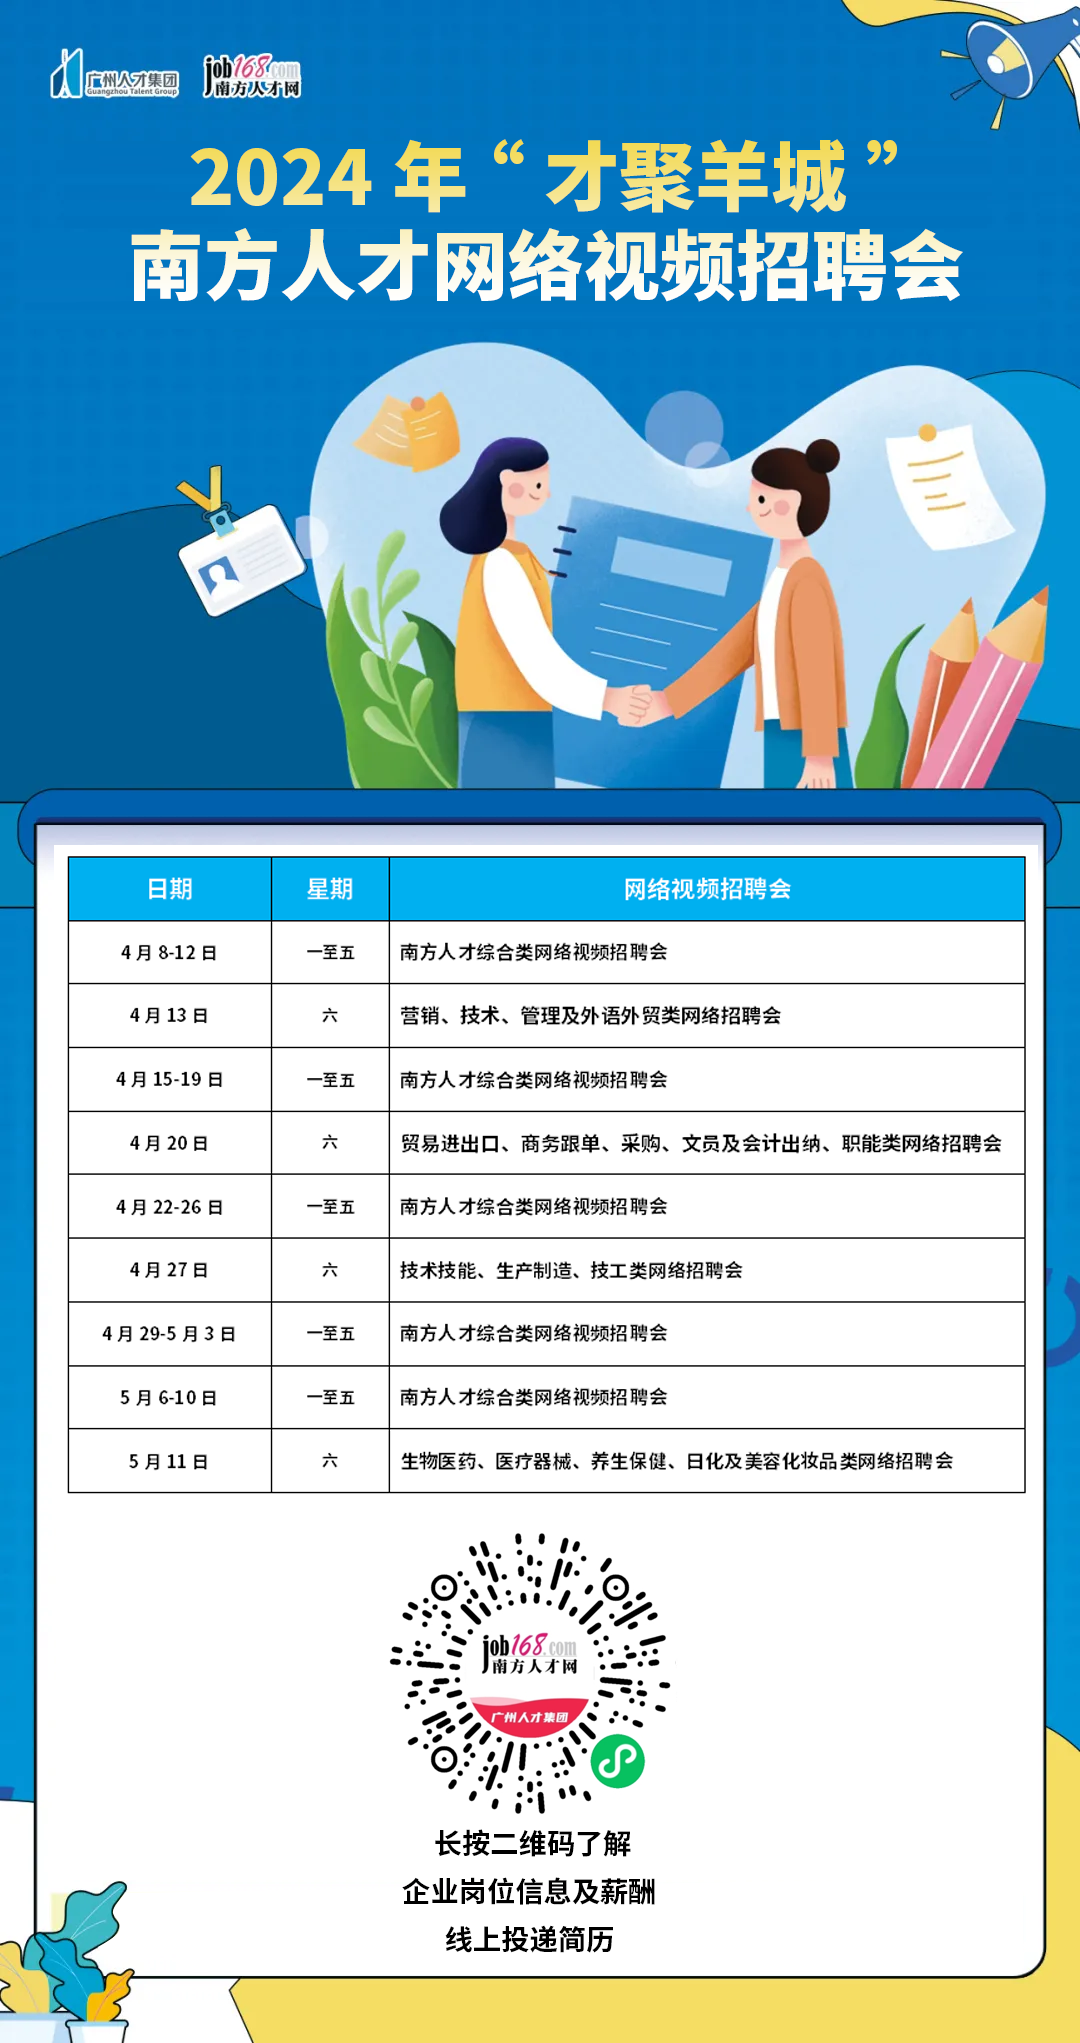 [2024年4月27日]广州技术技能、生产制造、技工类网络招聘会